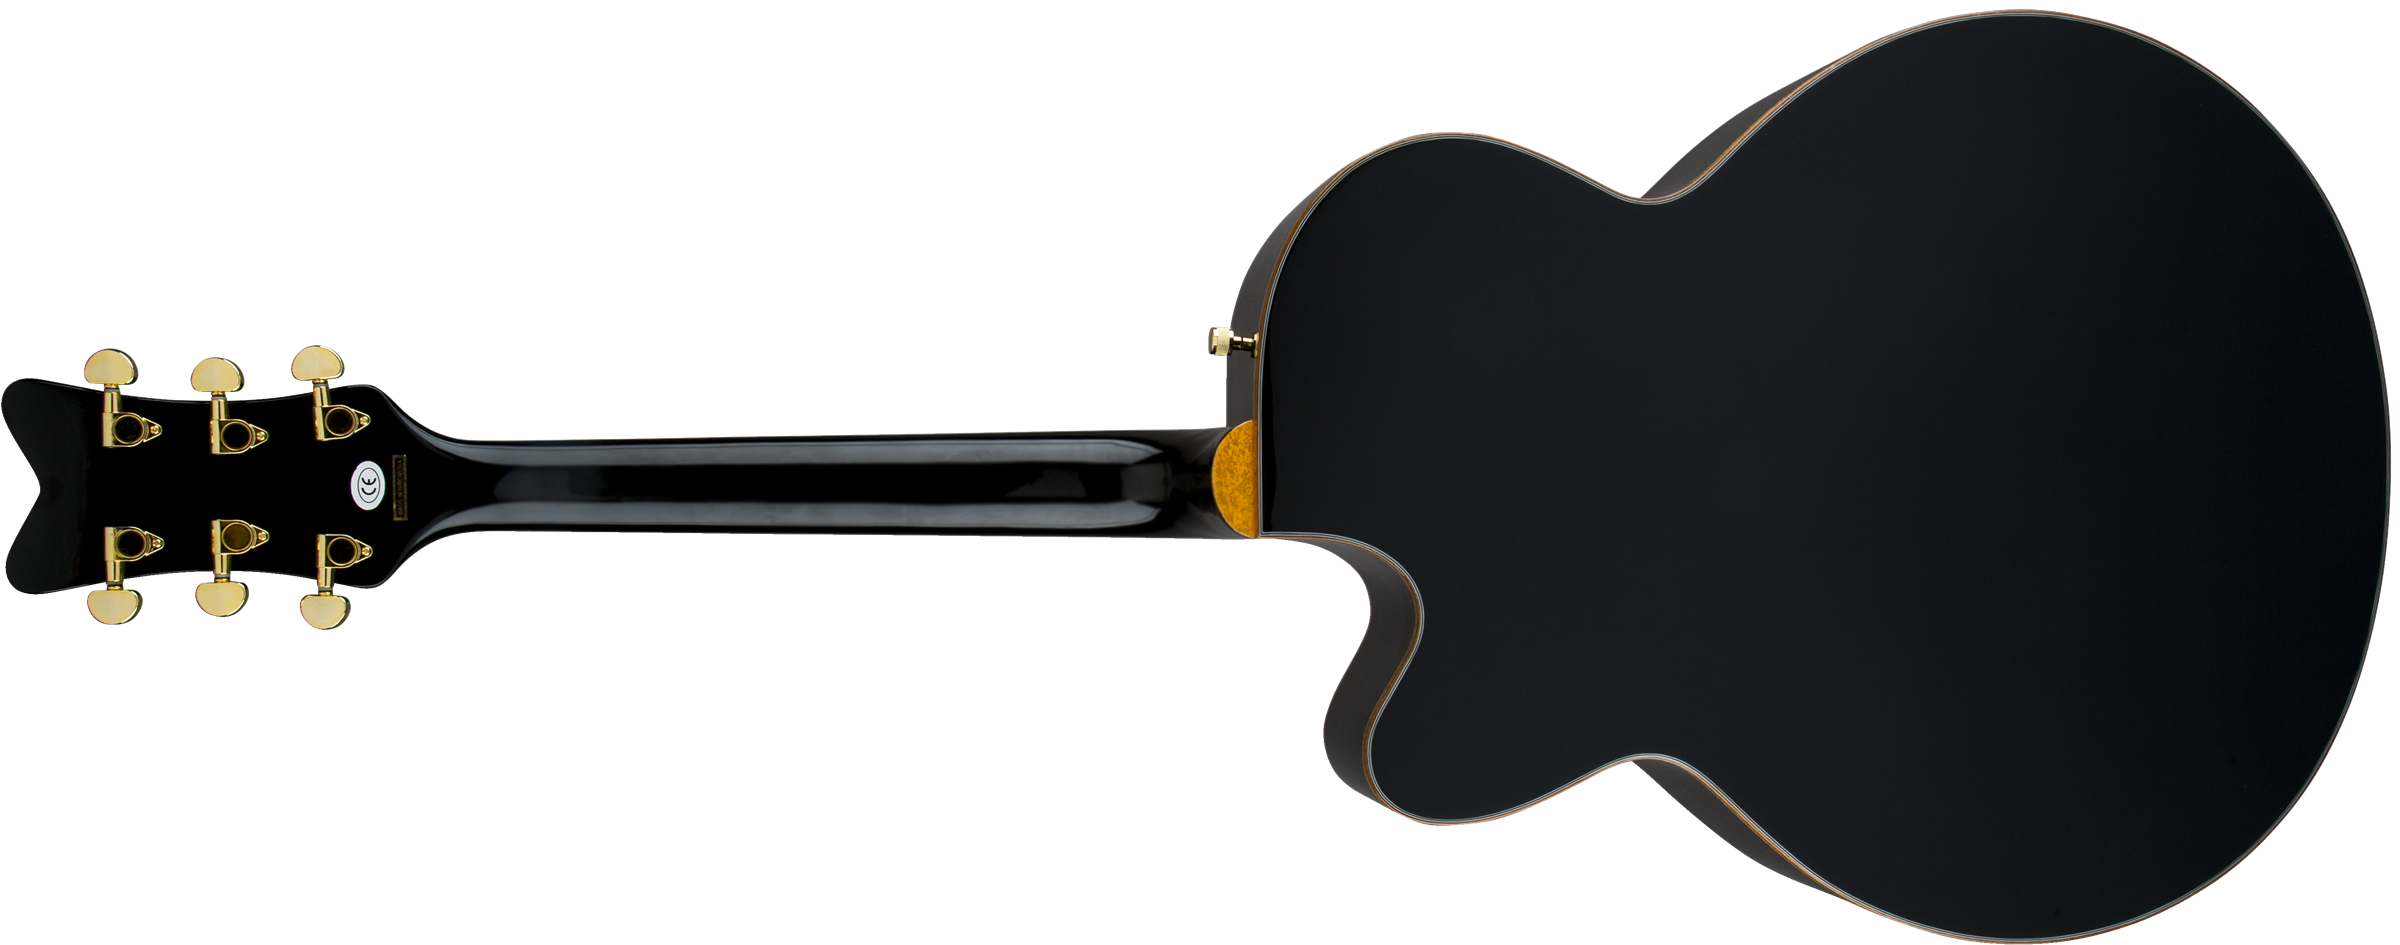 Gretsch G5022cbfe Rancher Falcon Jumbo Cw Epicea Erable Rw - Black - Guitare Electro Acoustique - Variation 2